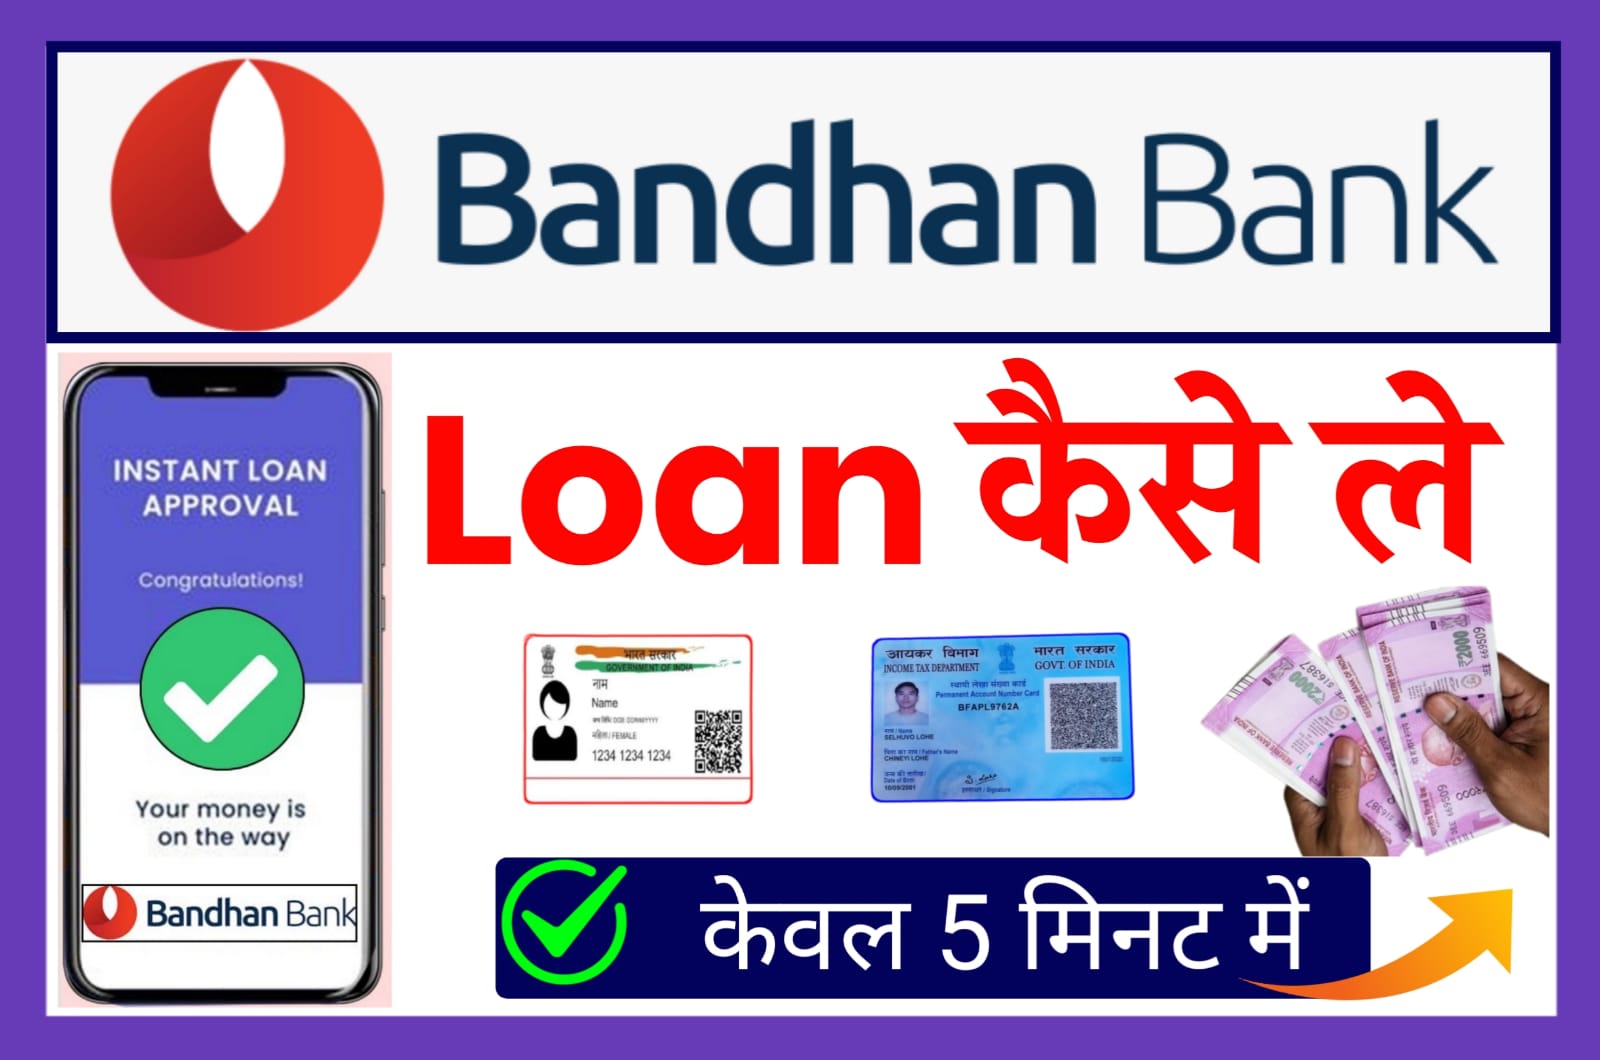 Bandhan Bank Se Loan Kaise Le - बंधन बैंक से लोन कैसे लें घर बैठे सिर्फ 5 मिनट में 50,000 तक लोन मिलेगा सीधे बैंक खाता